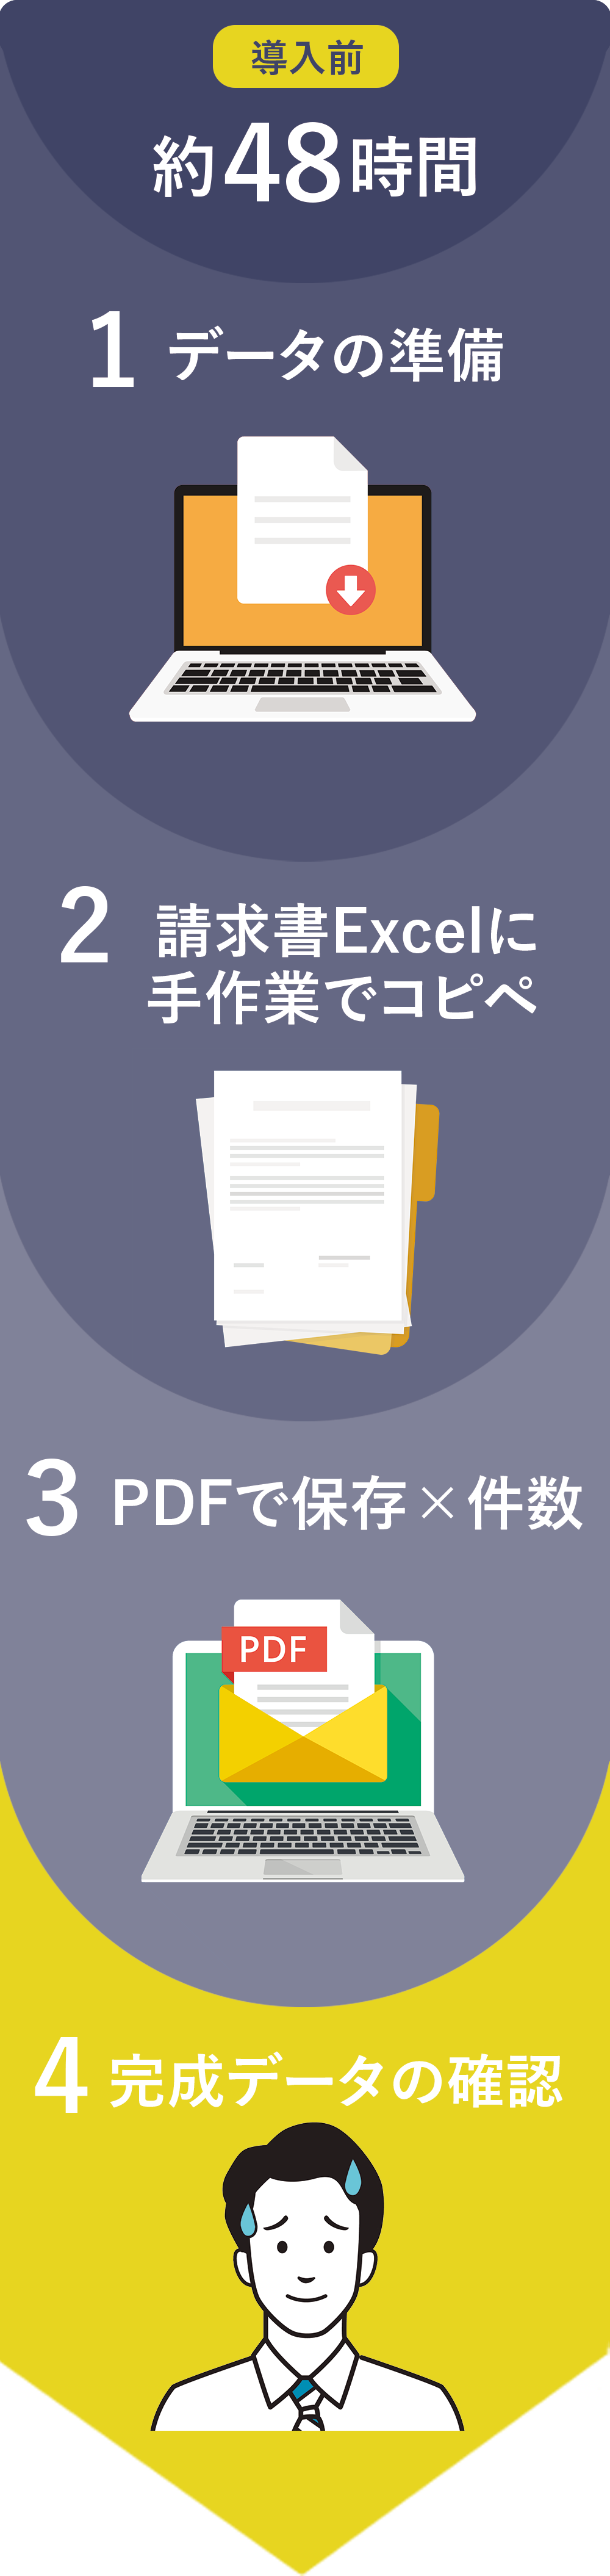 1.データの準備 ▷ 2.請求書テンプレに手作業で転記 ▷ 3.PDFに変換 ▷ 4.完成データの確認